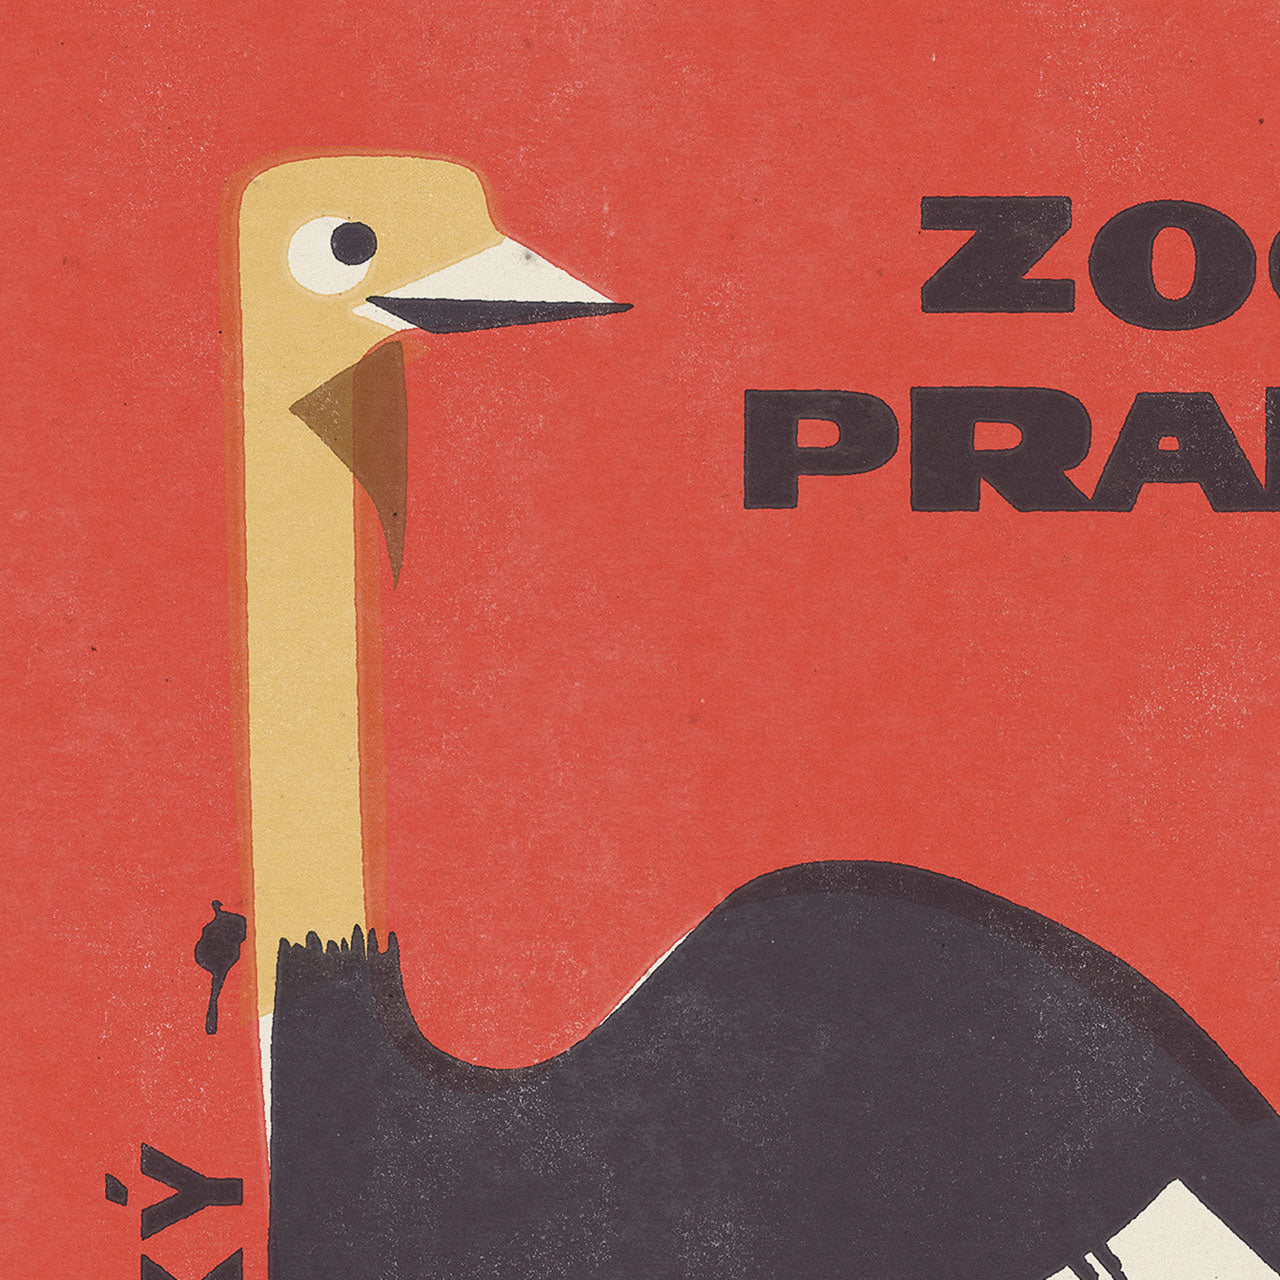 Zoo Praha - Pštros africký - Plakát 30x40 cm